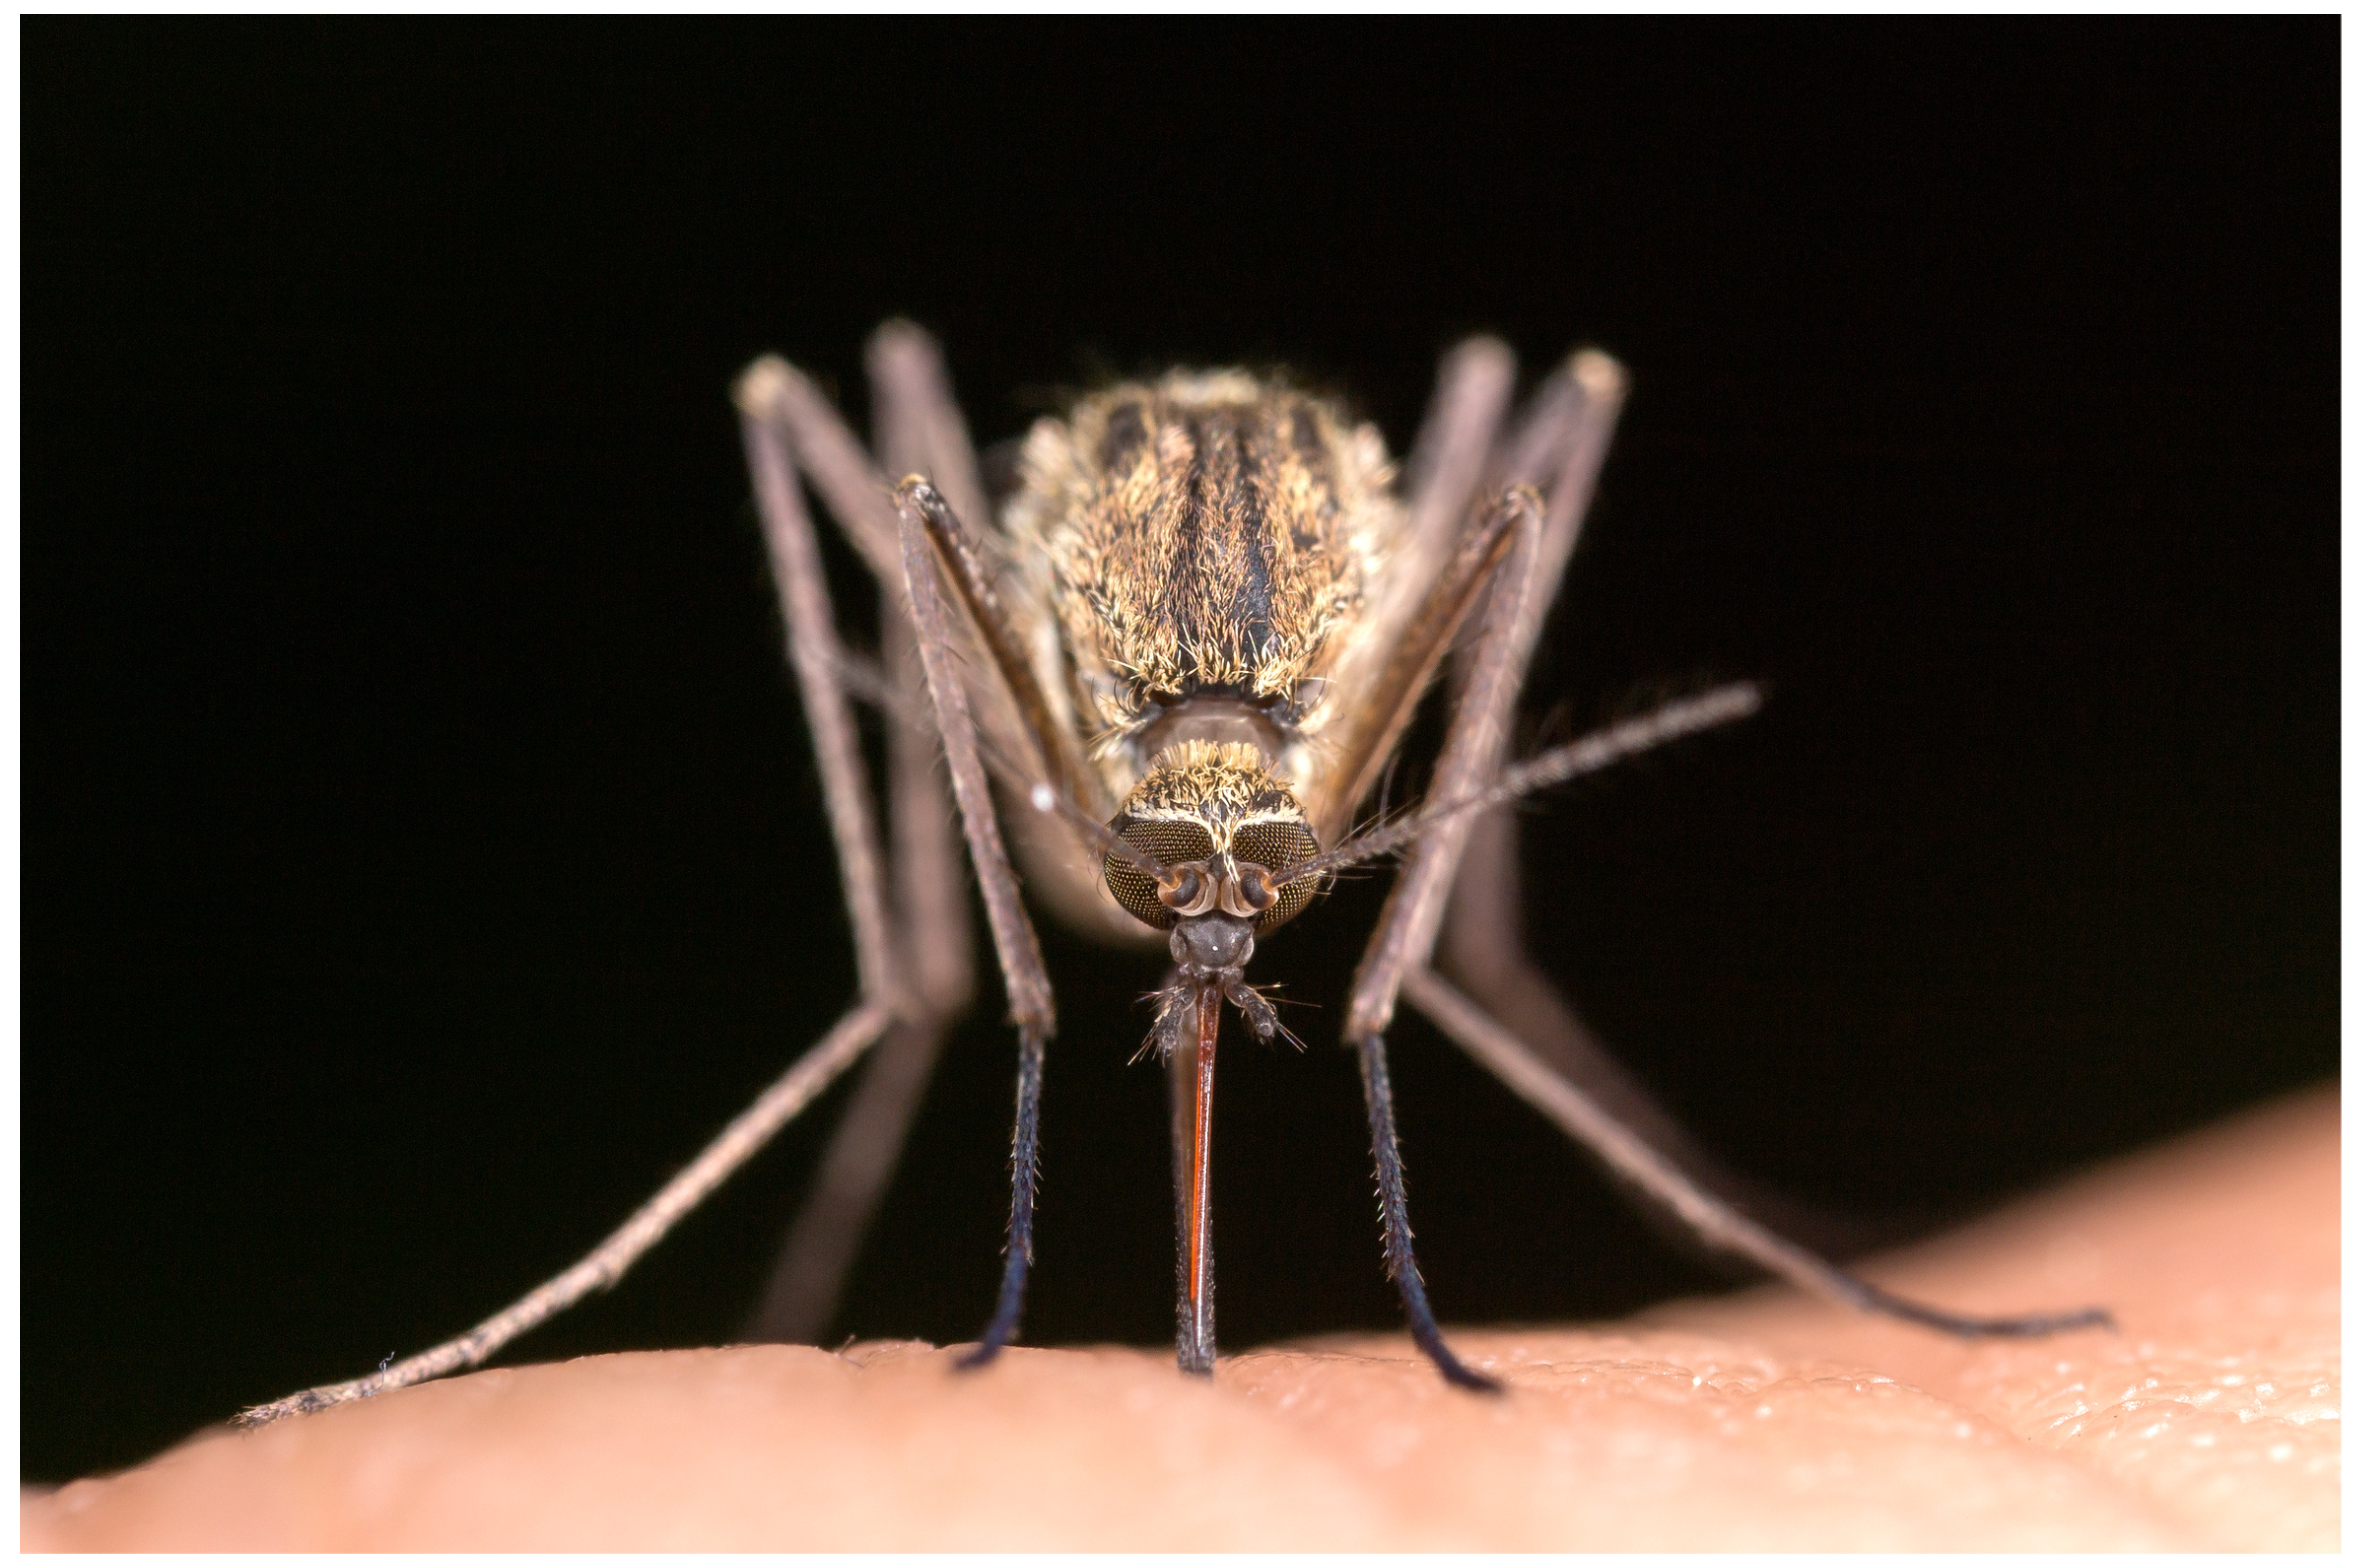 La dengue, le chikungunya et le Zika sont des arboviroses transmises par le moustique Aedes aegypti.